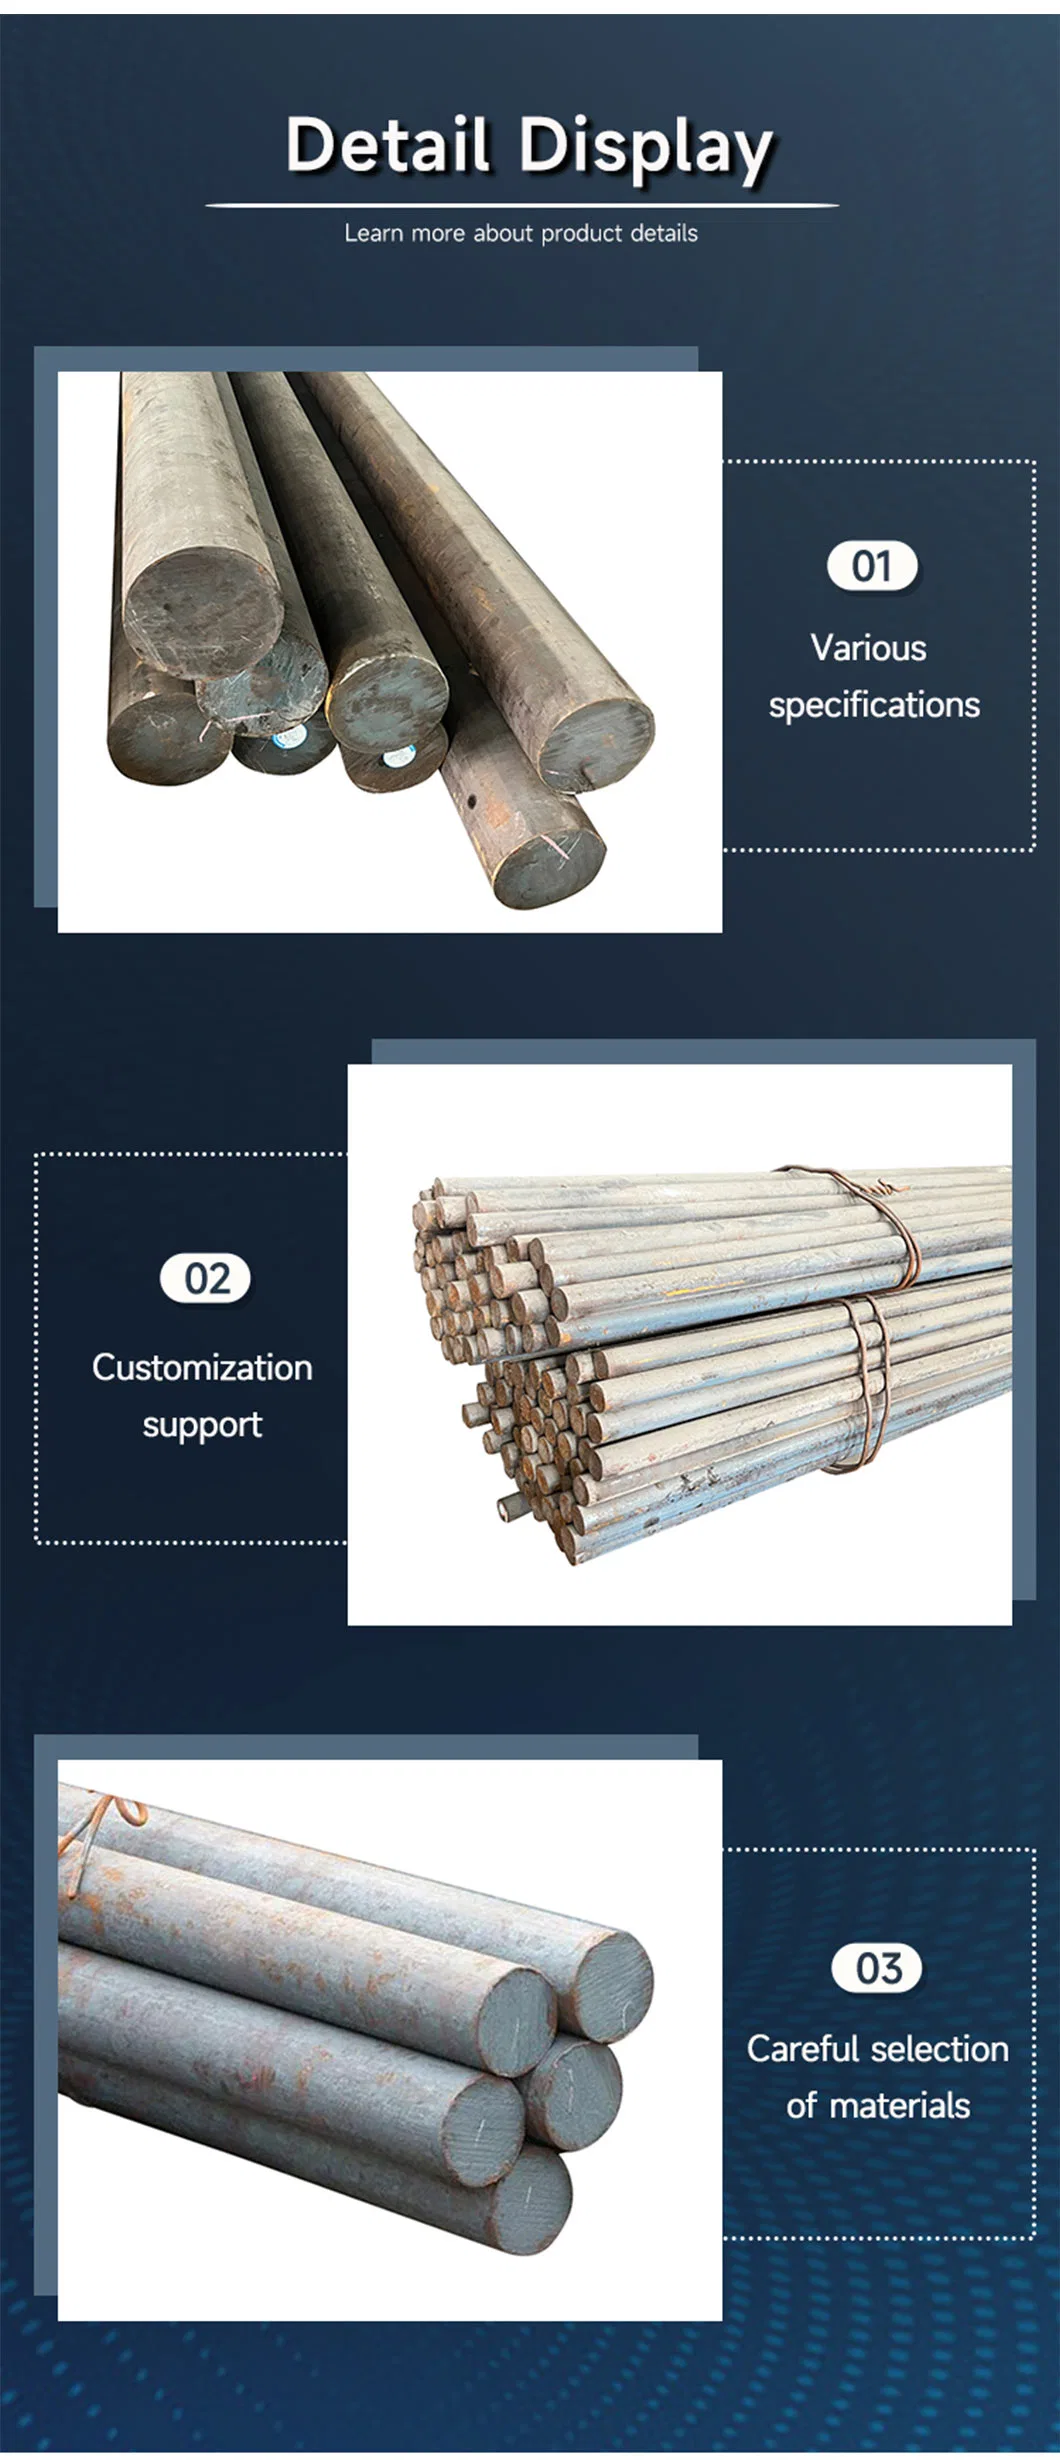 Steel Round Bar Cast Iron Carbon AISI 1045/S45c Round Steel Price